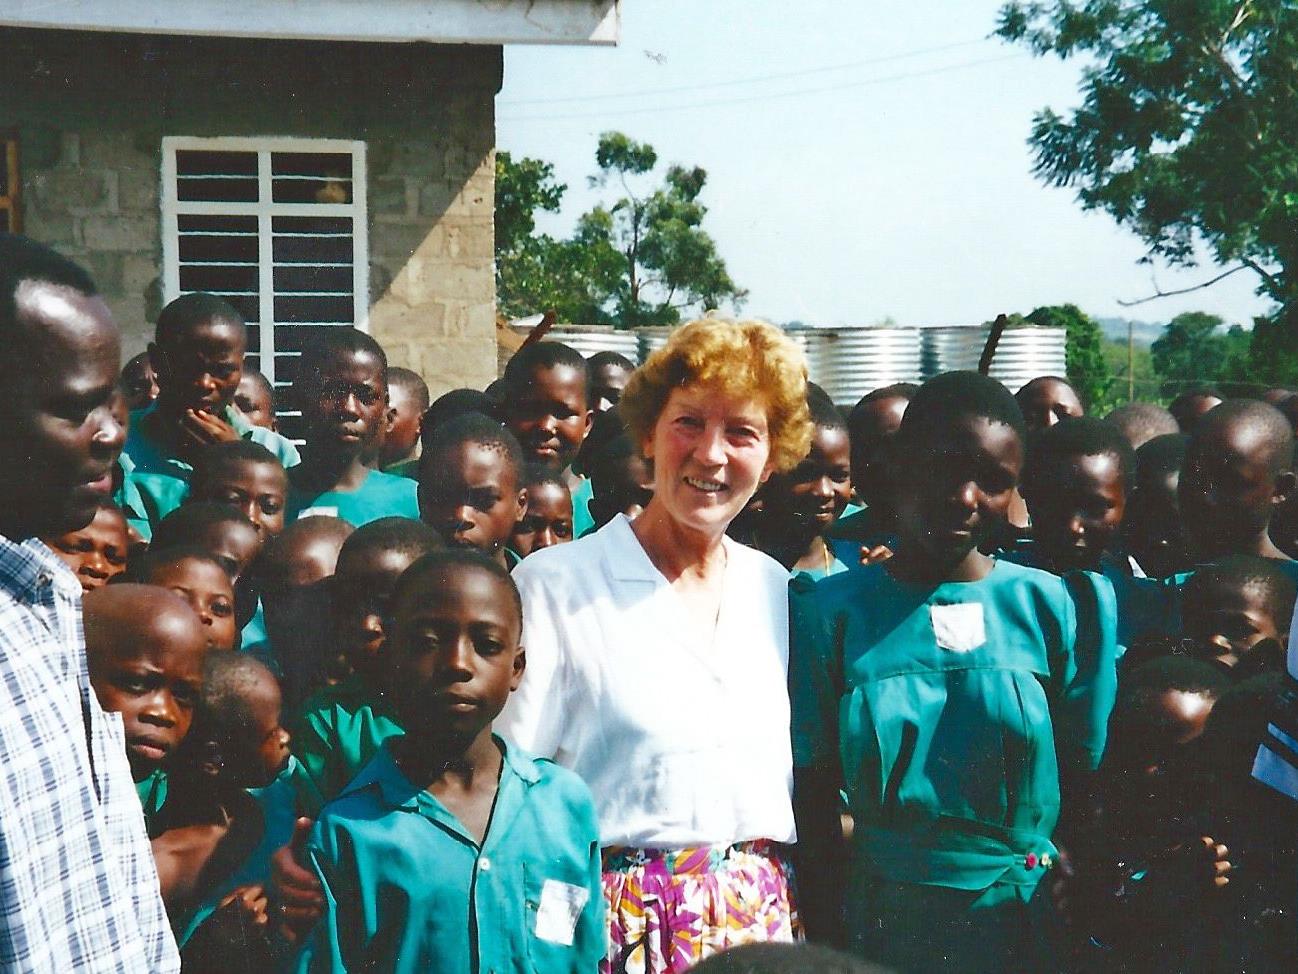 Projektleiterin Reinhilde Müller setzt sich seit 20 Jahren für Projekte rund um die Wasserversorgung und Jugendförderung in Uganda ein.